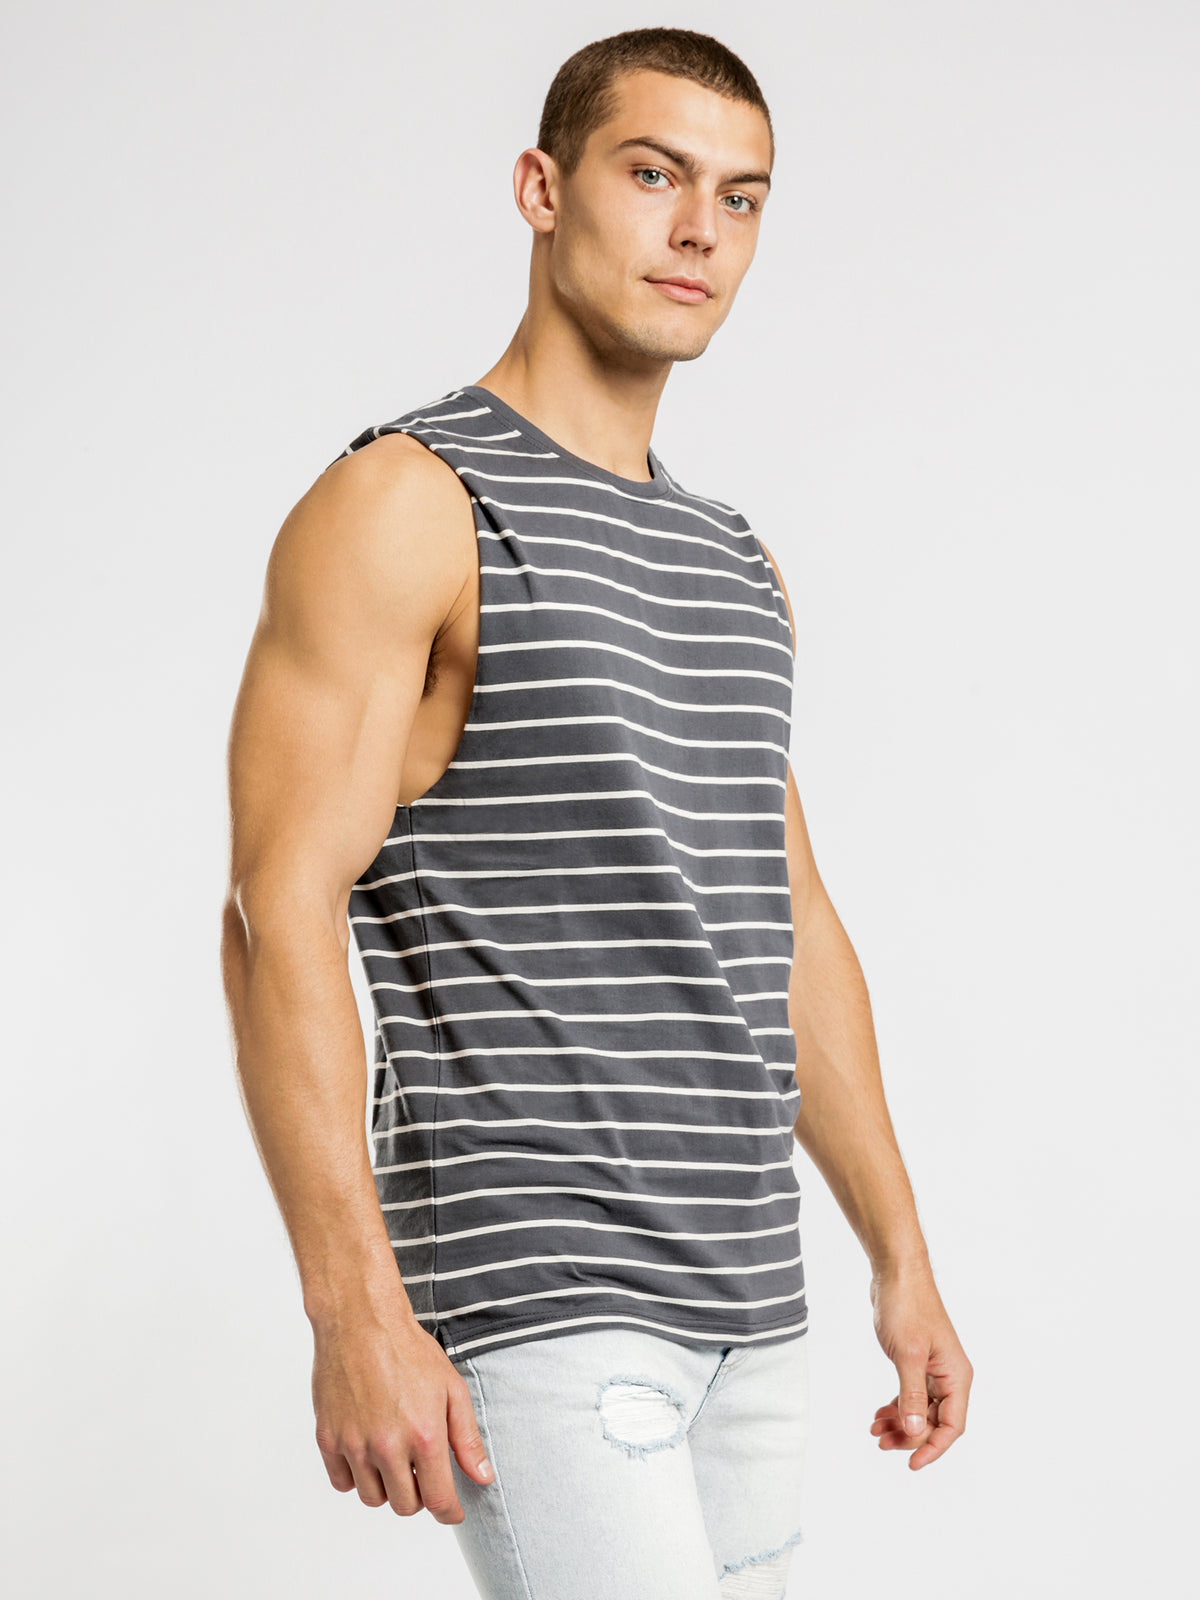 Casper Stripe Muscle T-Shirt in Ink Stripe